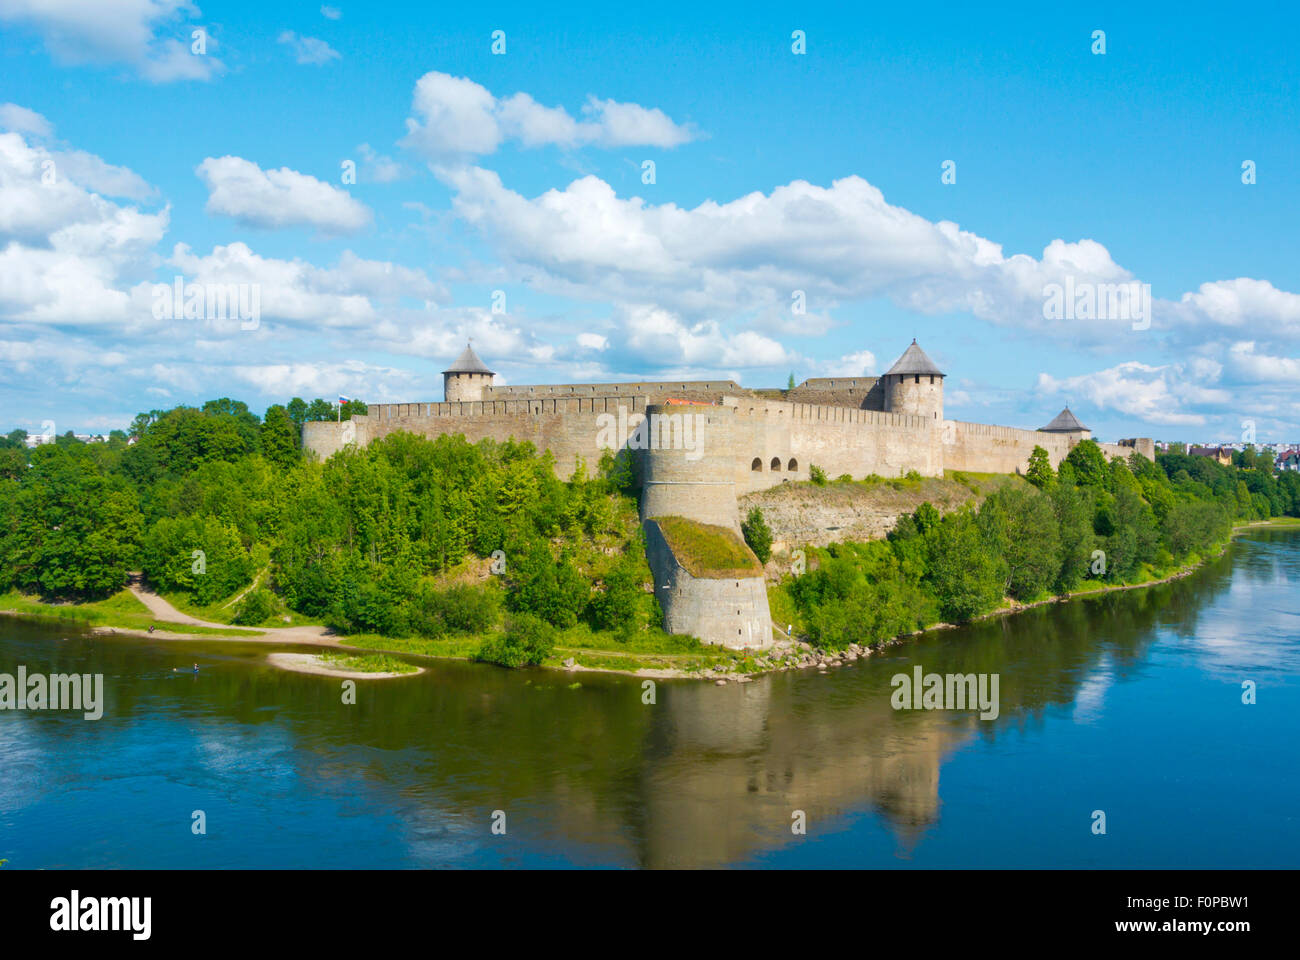 Le Zamek Ivangorod, Ivangorod, château de la rivière Narva, Ivangorod, Russie Banque D'Images